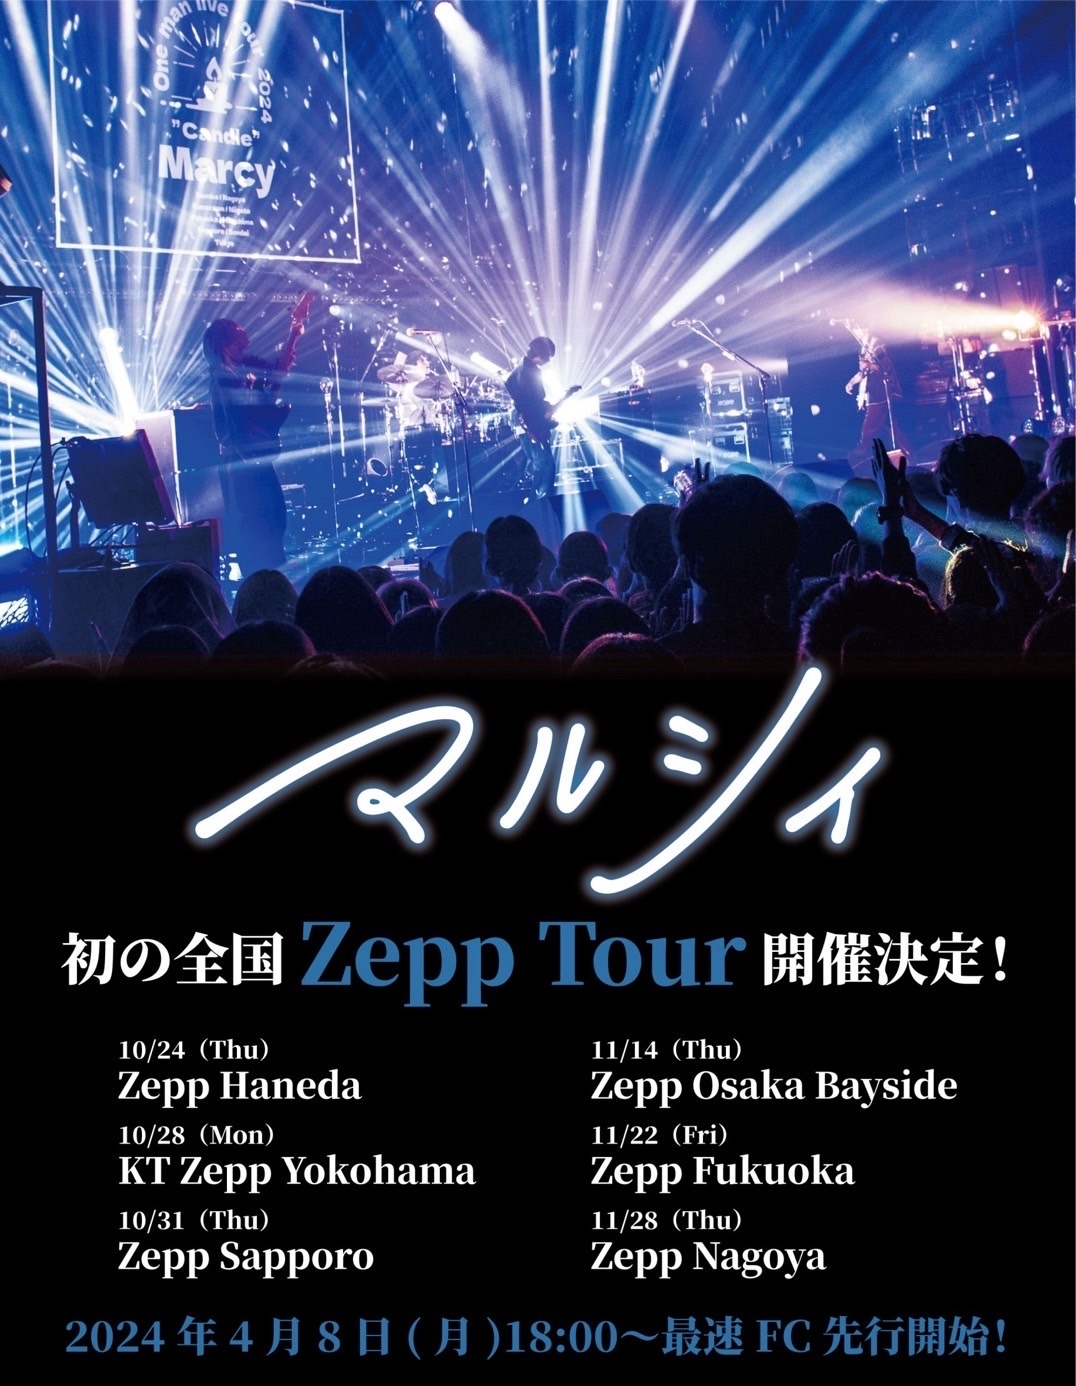 マルシィ Zepp Tour